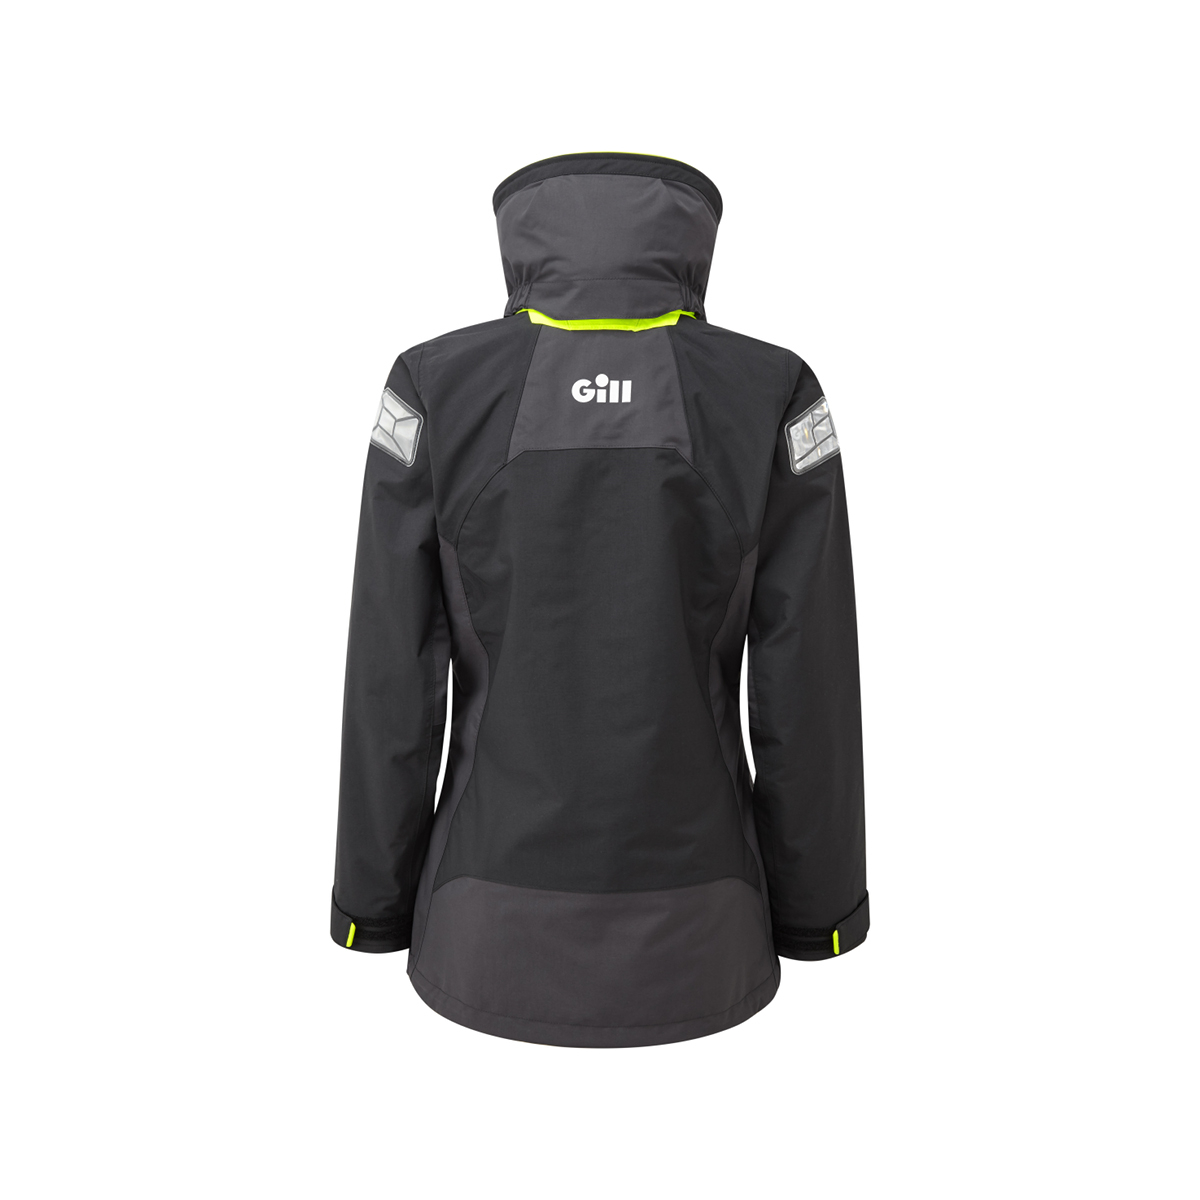 Gill OS2 veste de voile offshore femme noir-graphite , taille 10